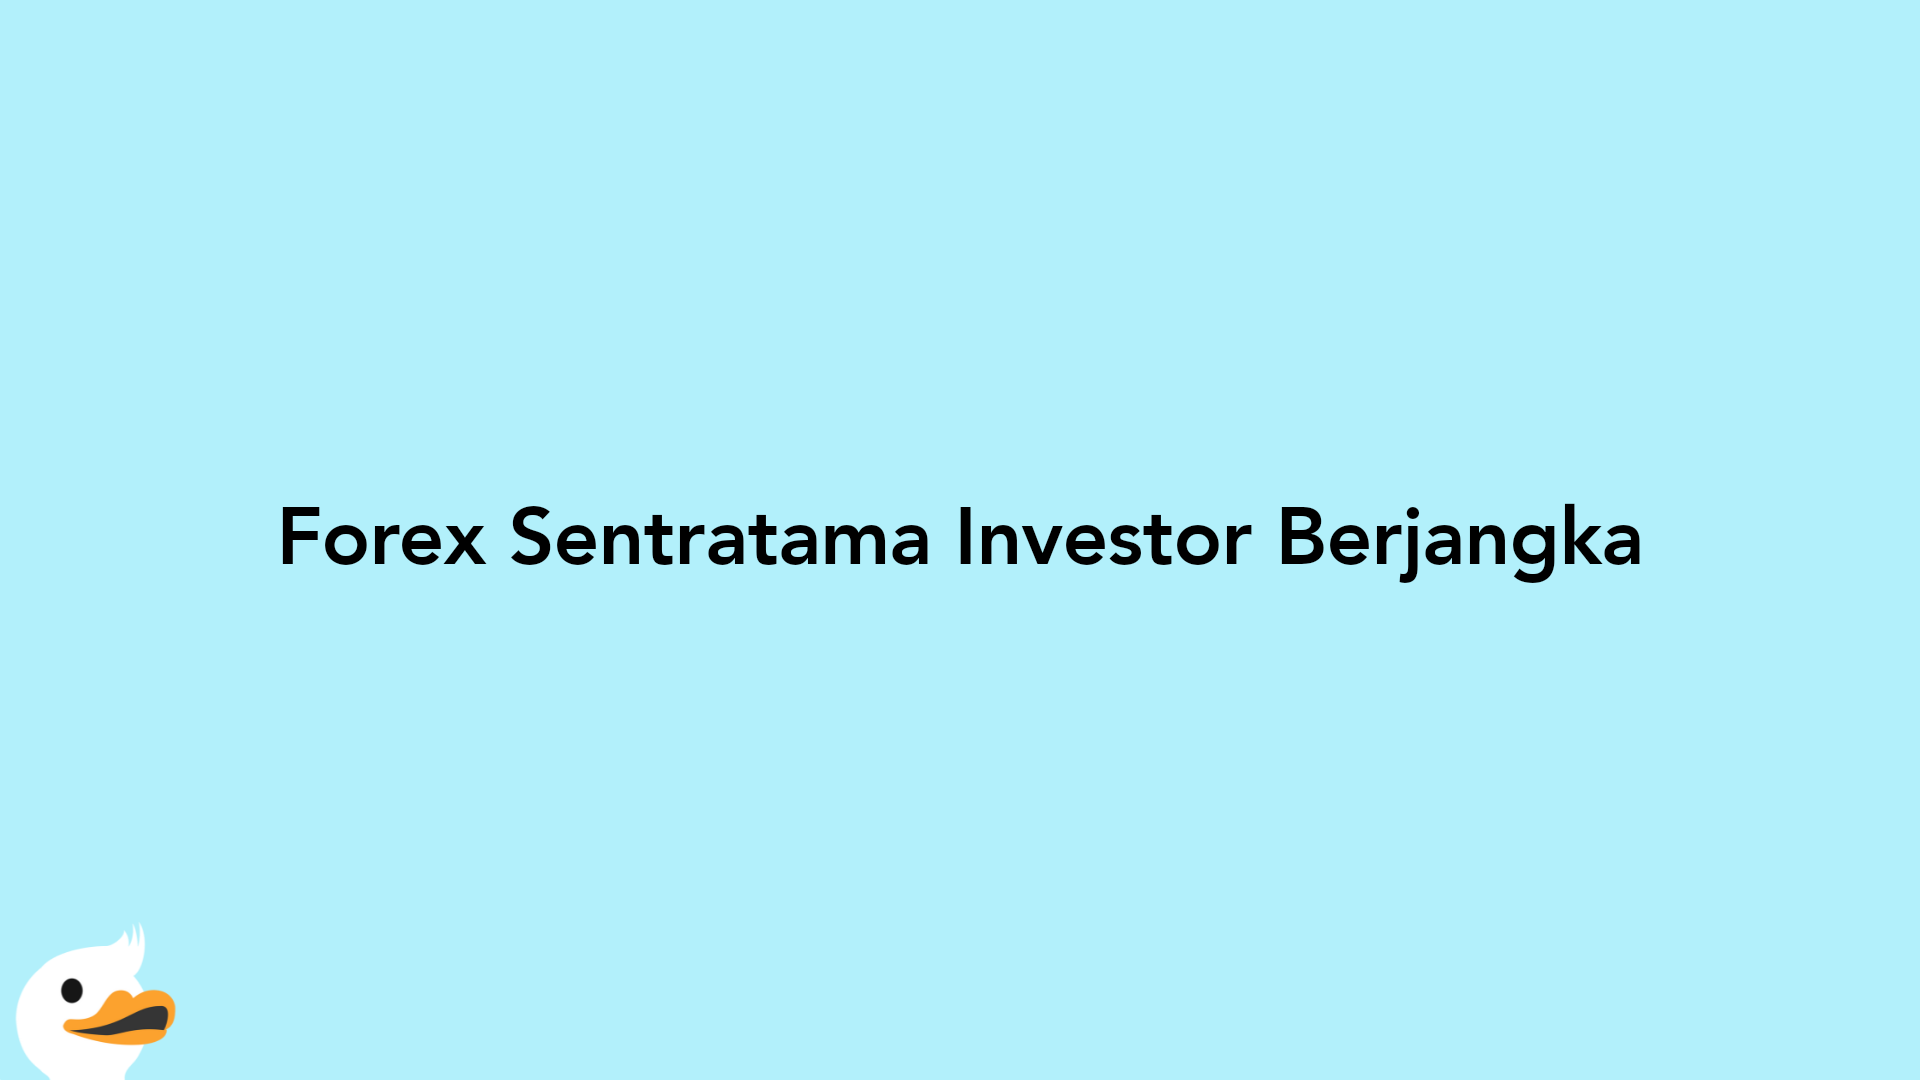 Forex Sentratama Investor Berjangka